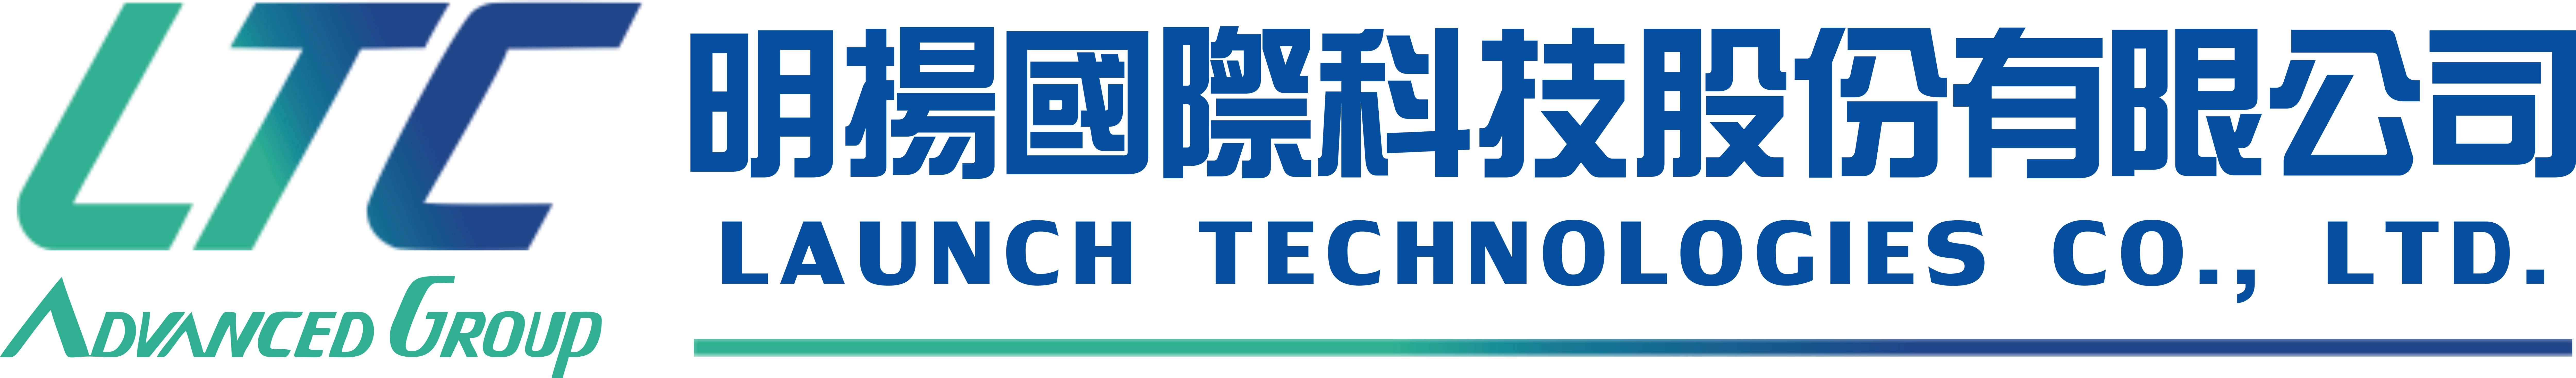 贊助Logo標誌:明揚國際科技股份有限公司